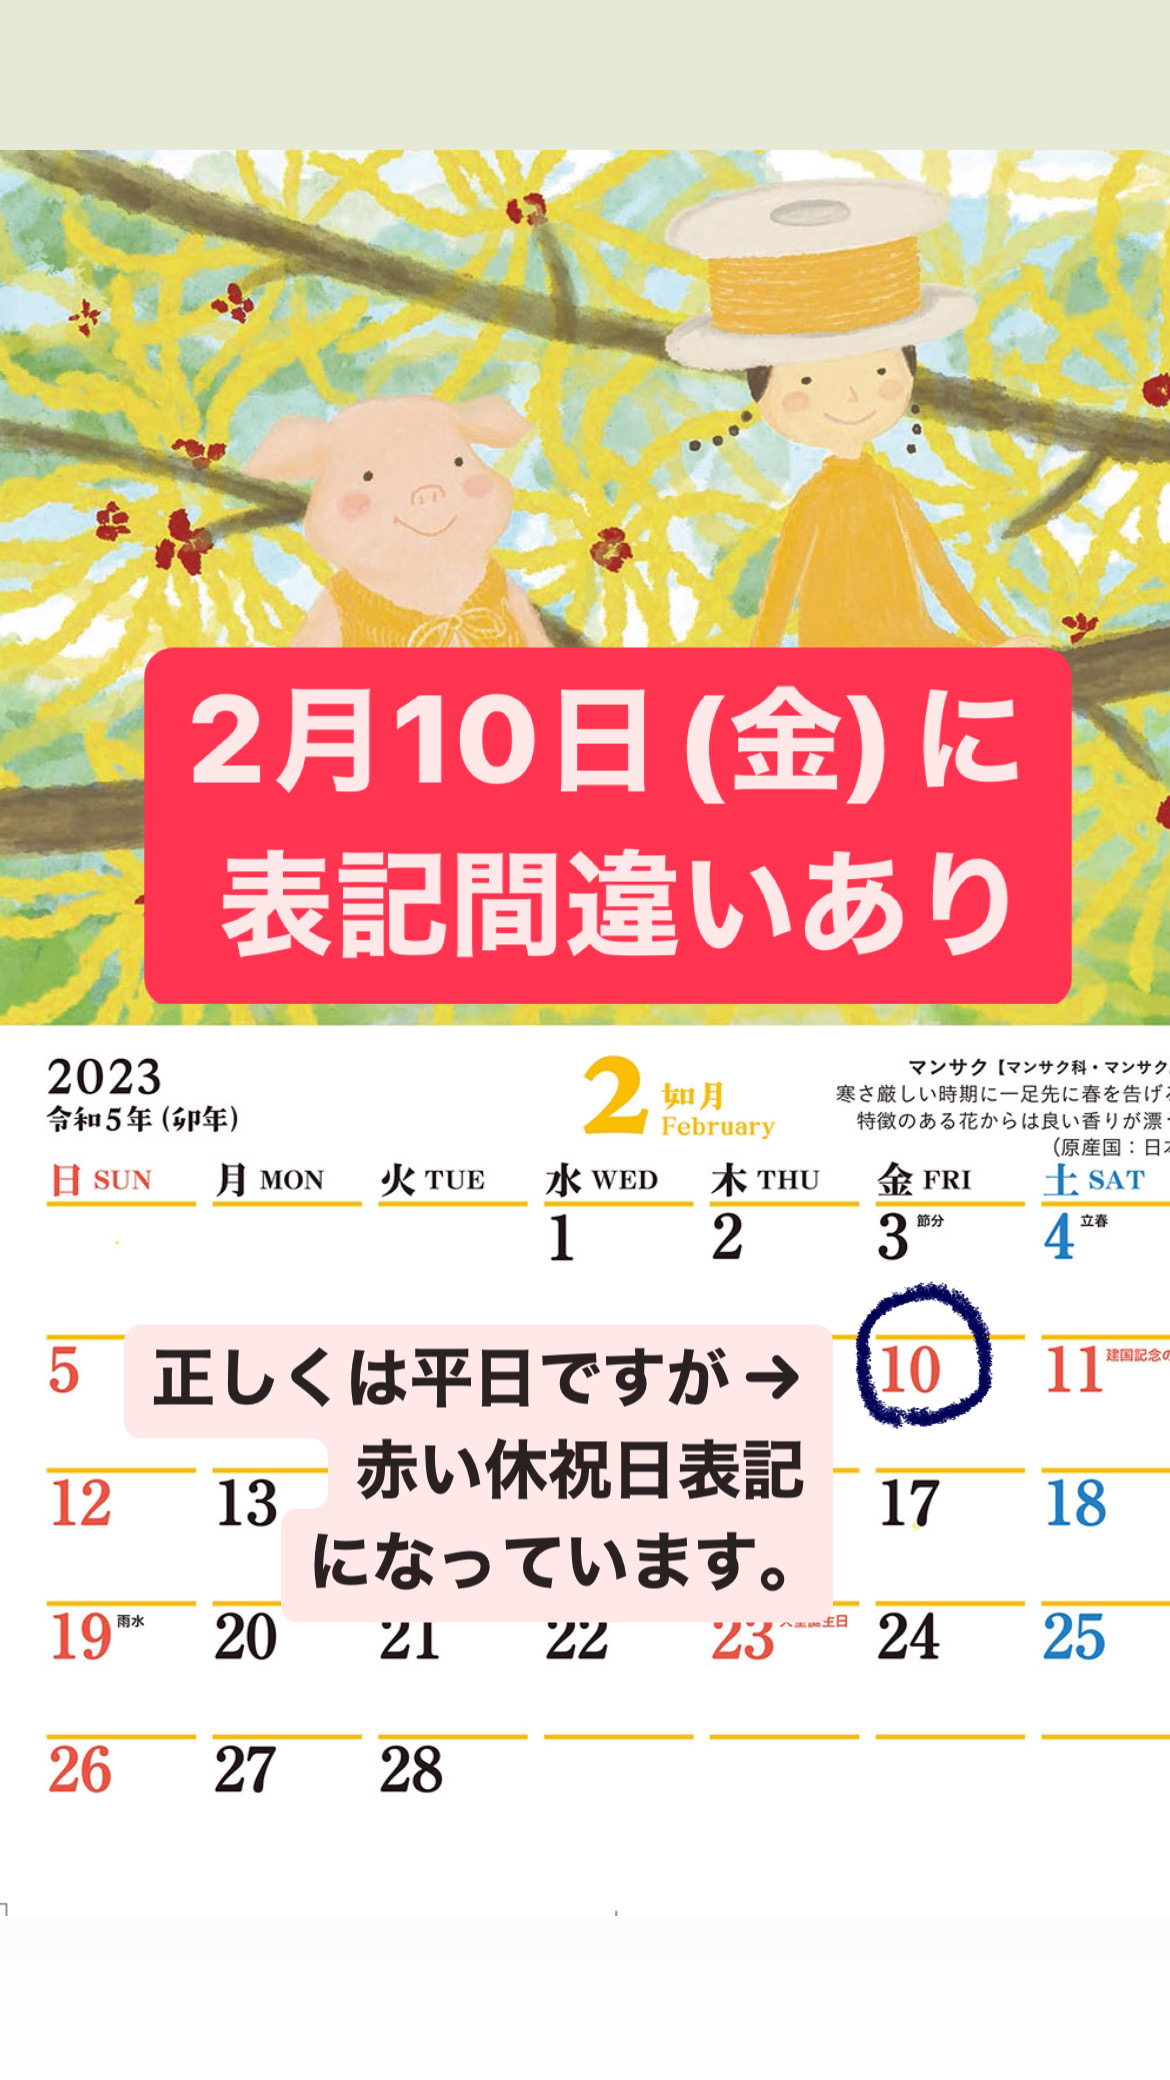 『2023 カレンダー』2月10日（金）の日付表示誤記のお詫びと訂正